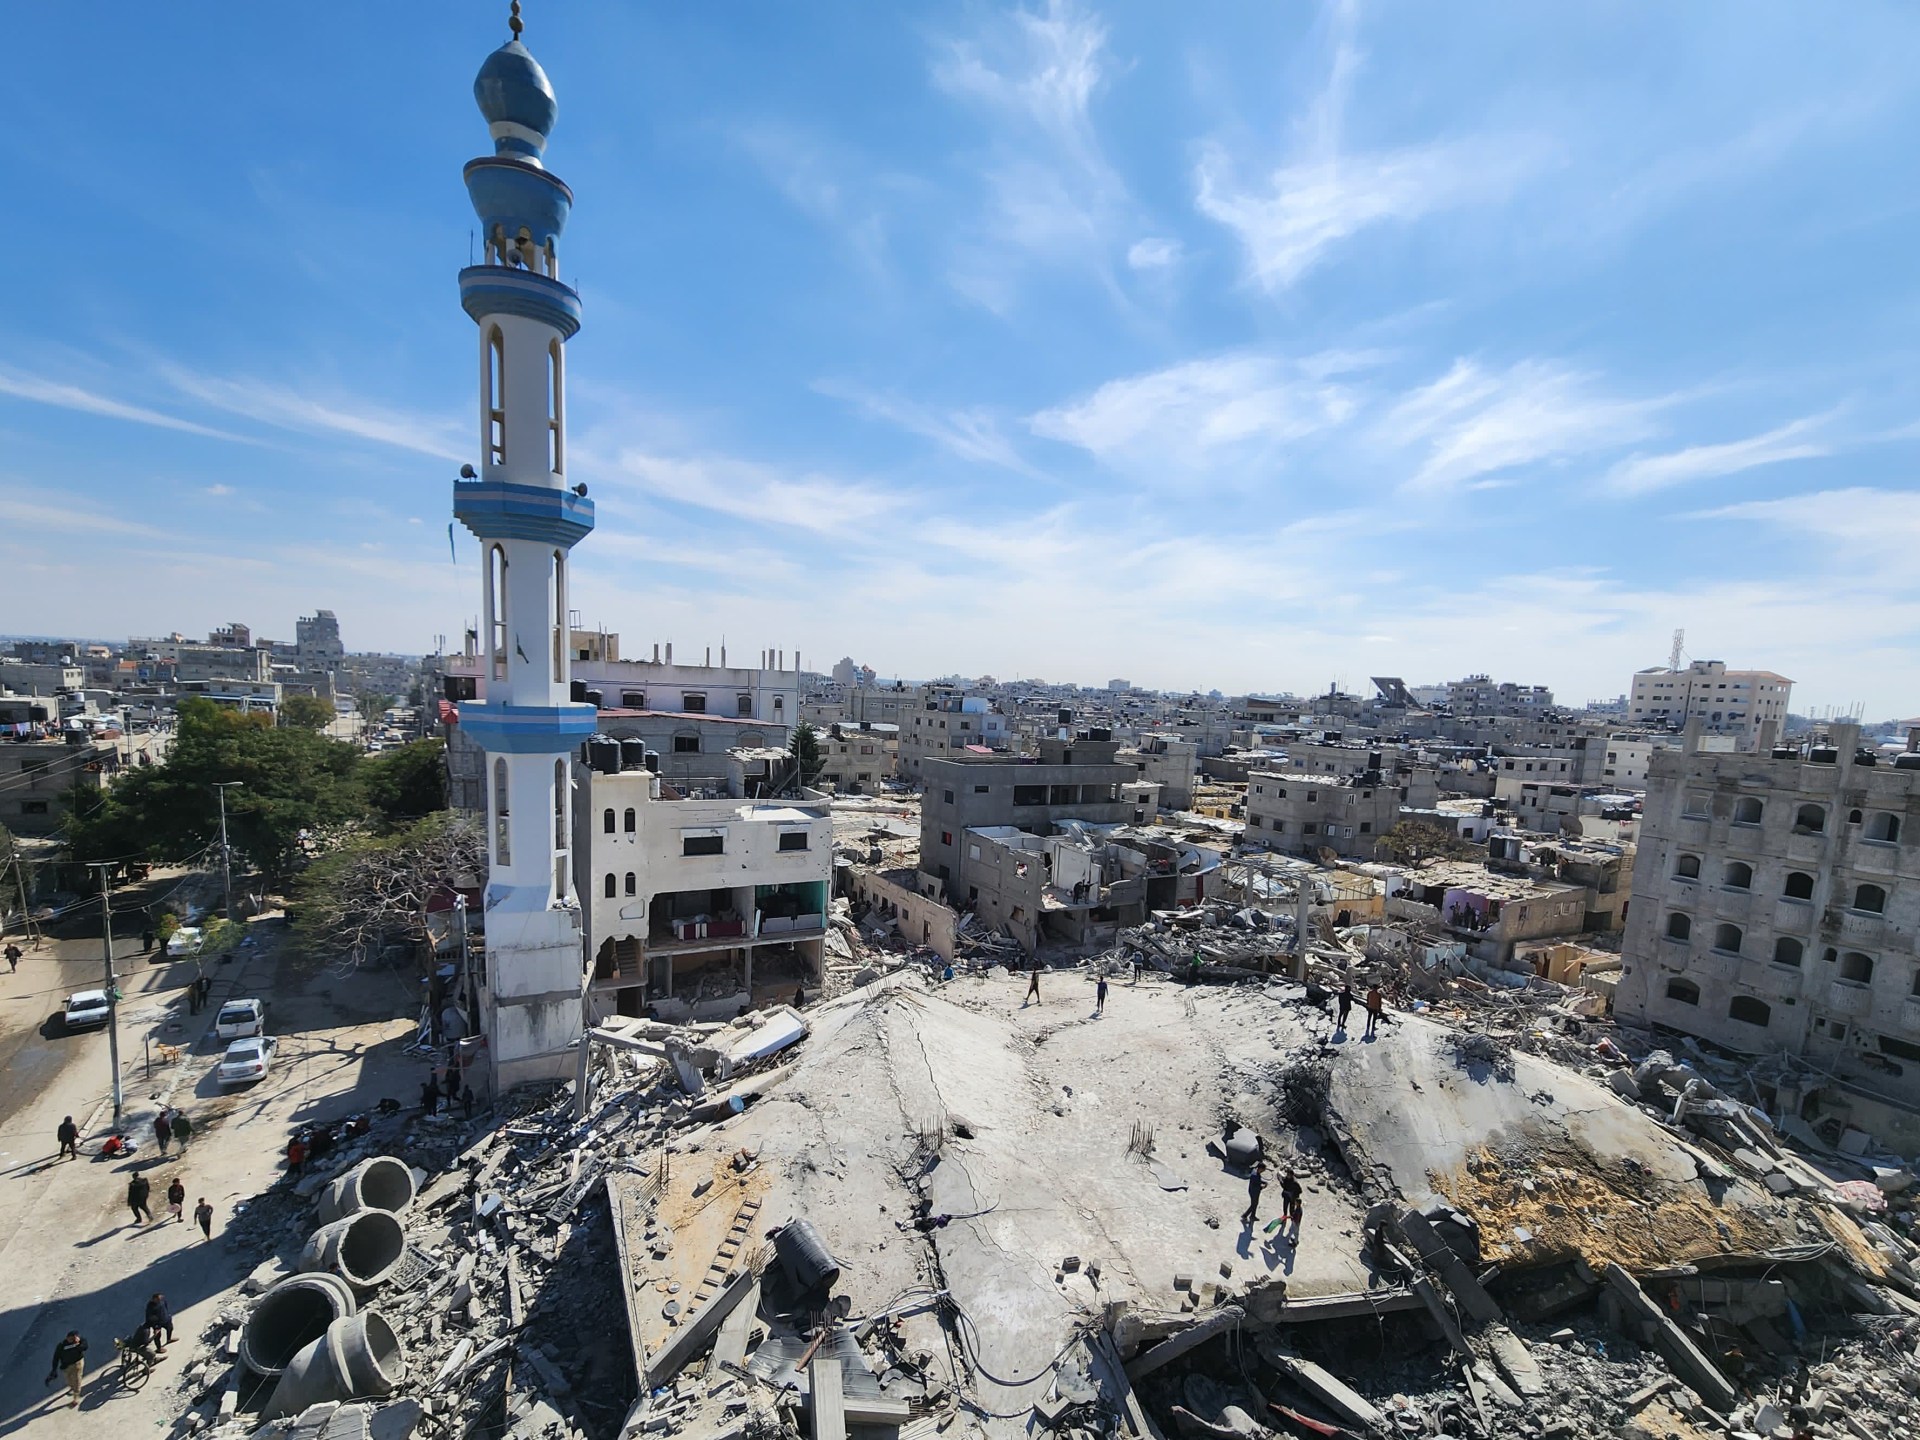 اليونسكو تعتمد ثالث قرار لصالح فلسطين خلال أيام | أخبار – البوكس نيوز